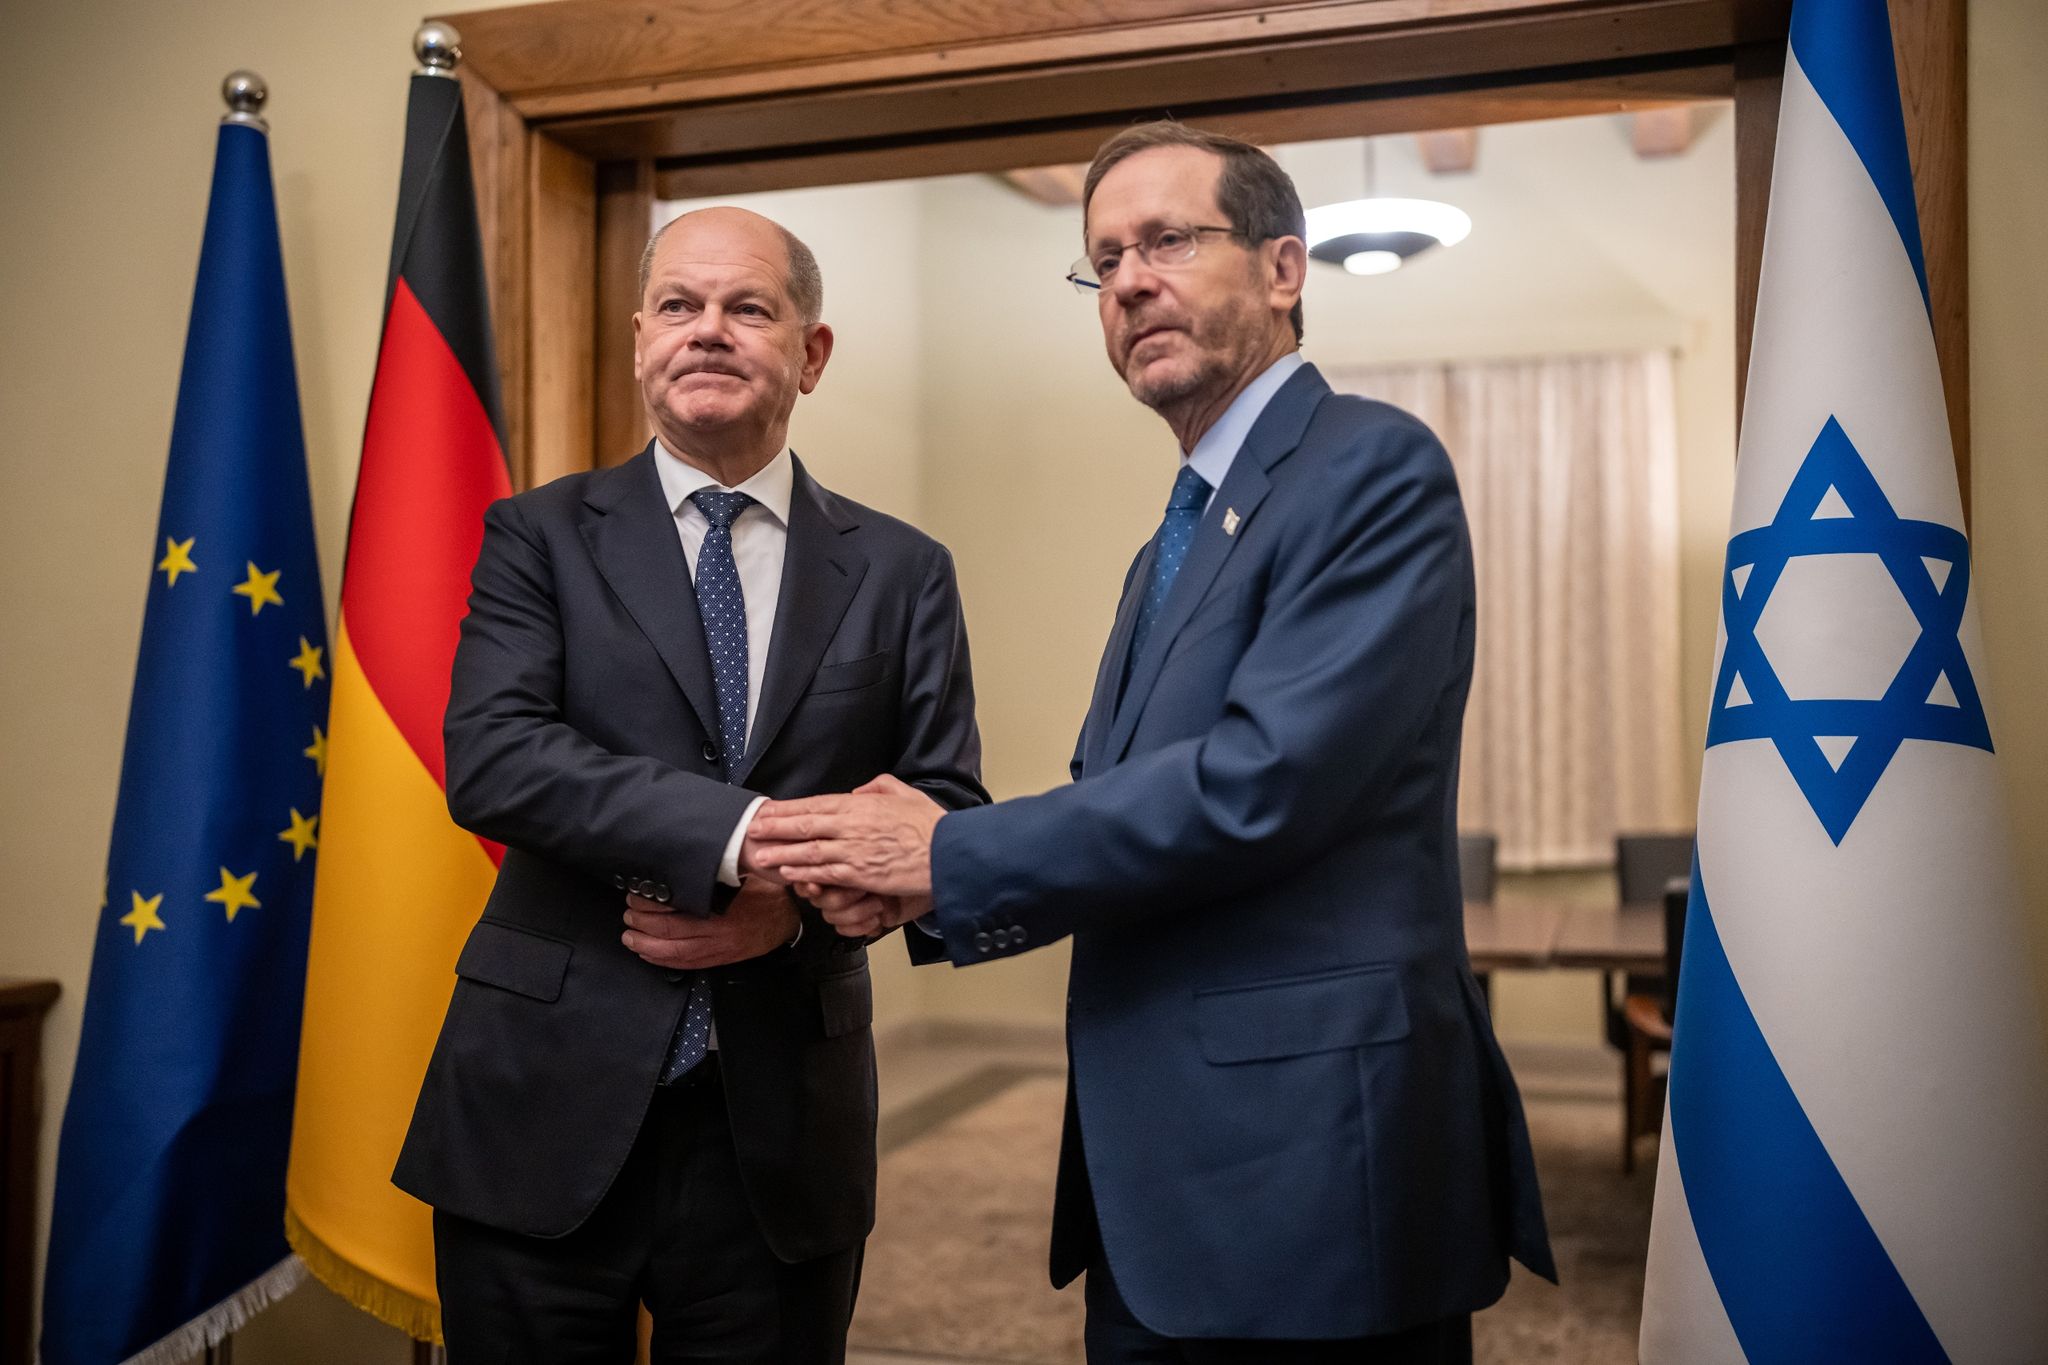 Ein Zeichen der Solidarität: Bundeskanzler Olaf Scholz (SPD, l) steht neben Izchak Herzog, Präsident von Israel, zwischen den Flaggen Deutschlands und Israels.